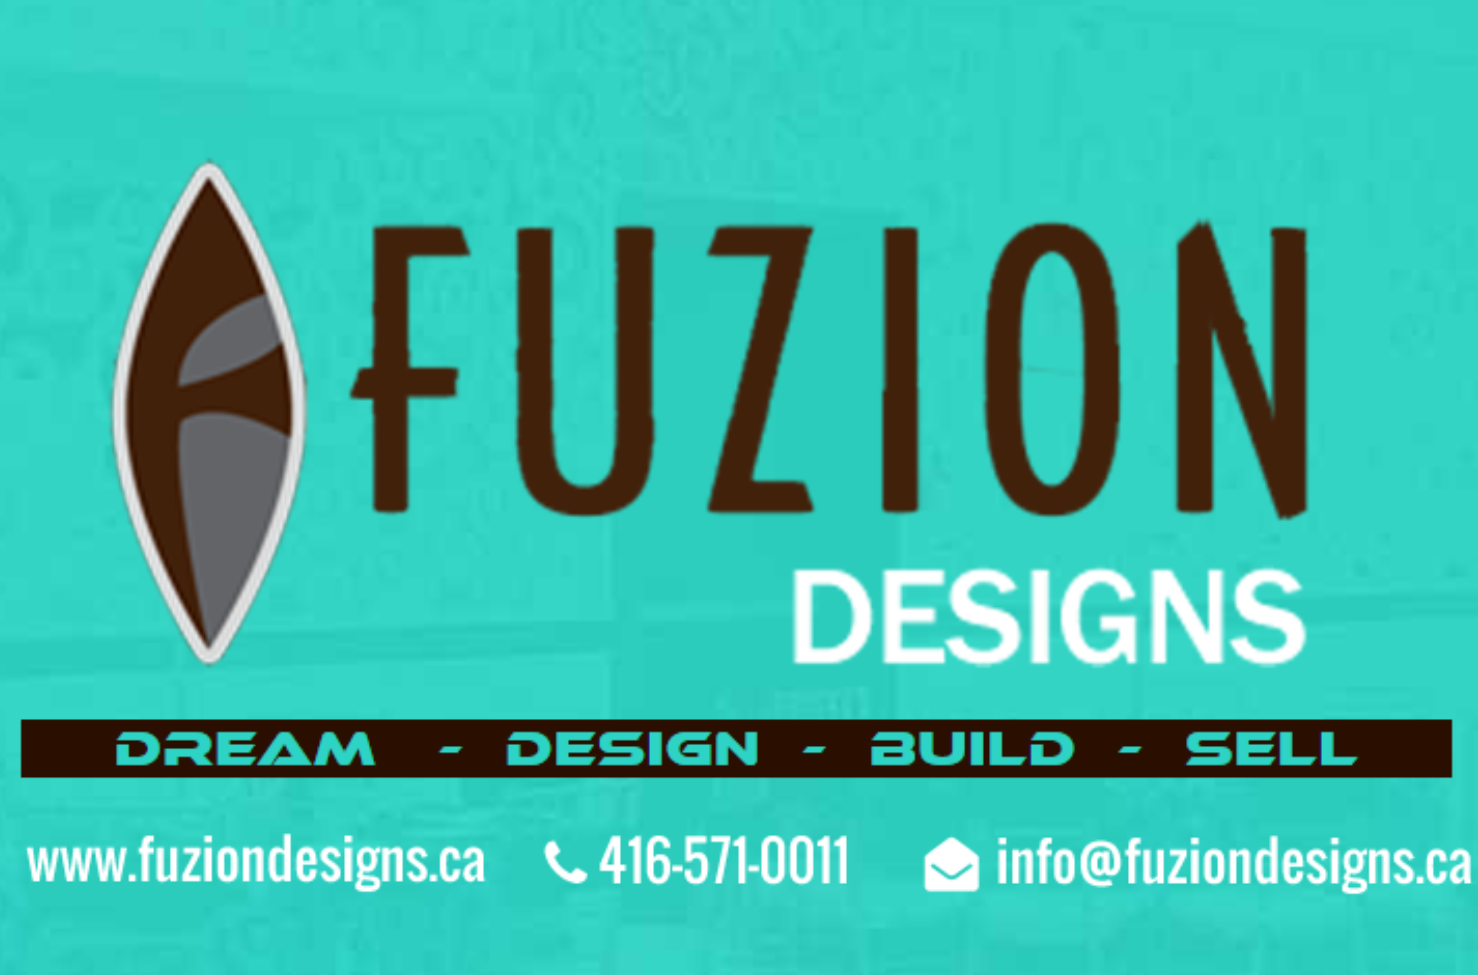 Fuzion Designs's logo